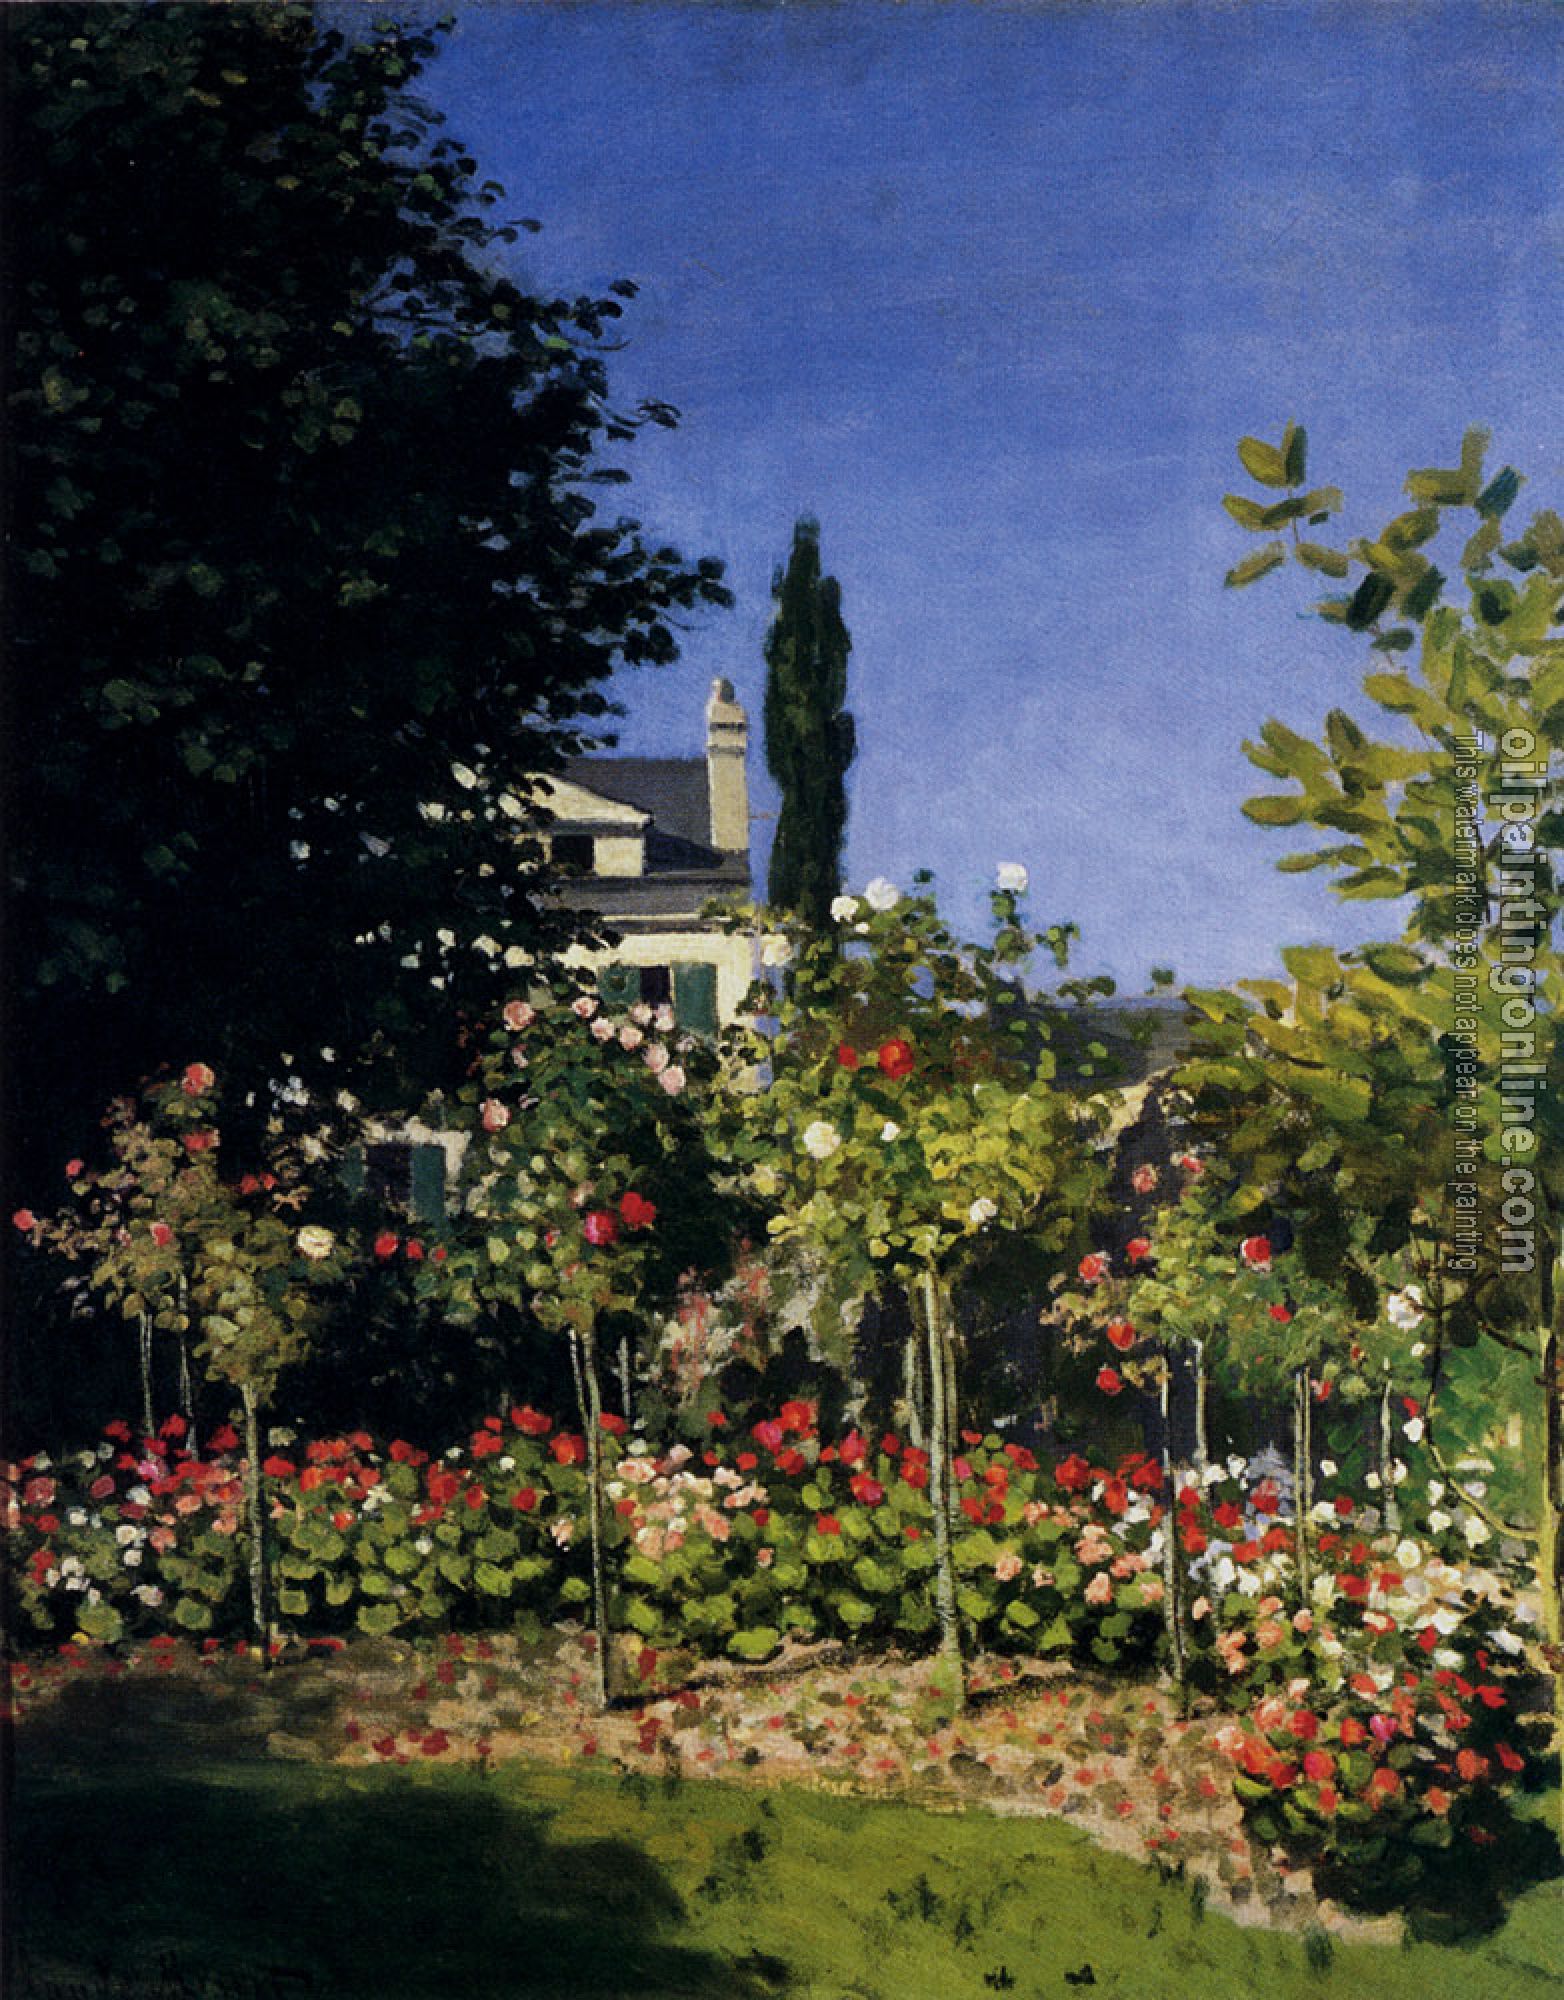 Monet, Claude Oscar - Garden In Flower At Sainte-Adresse